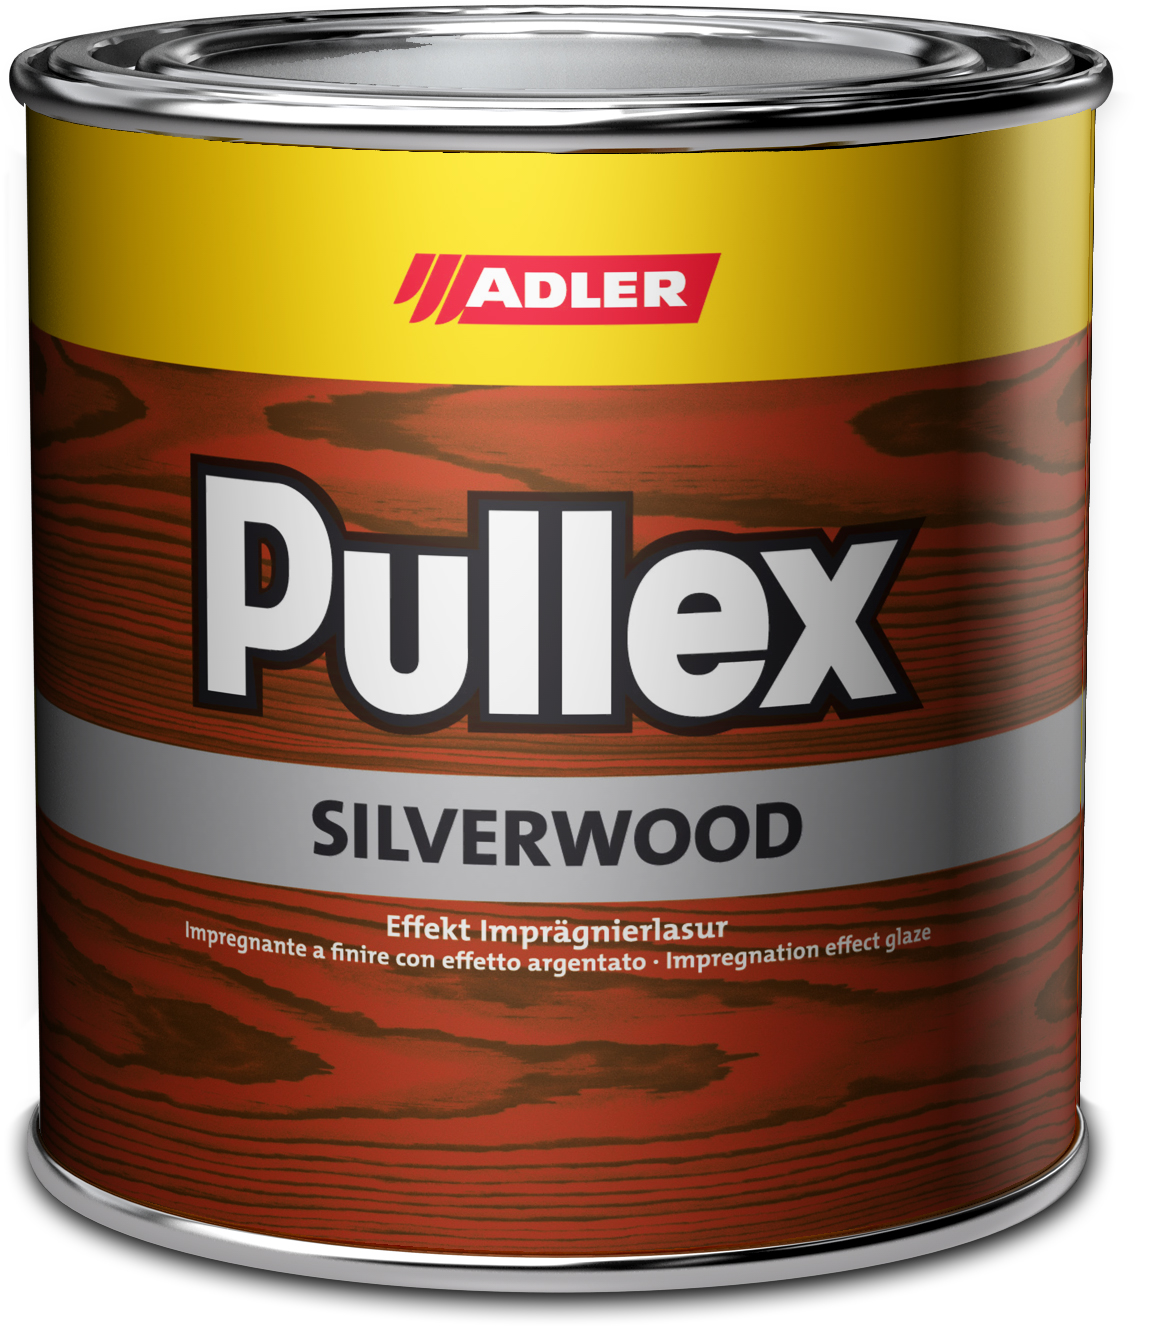 Adler Pullex Silverwood - efektná lazúra do exteriéru vytvárajúca vzhľad starého dreva 5 l fichte hell geflämnt - smrek svetlý žíhaný